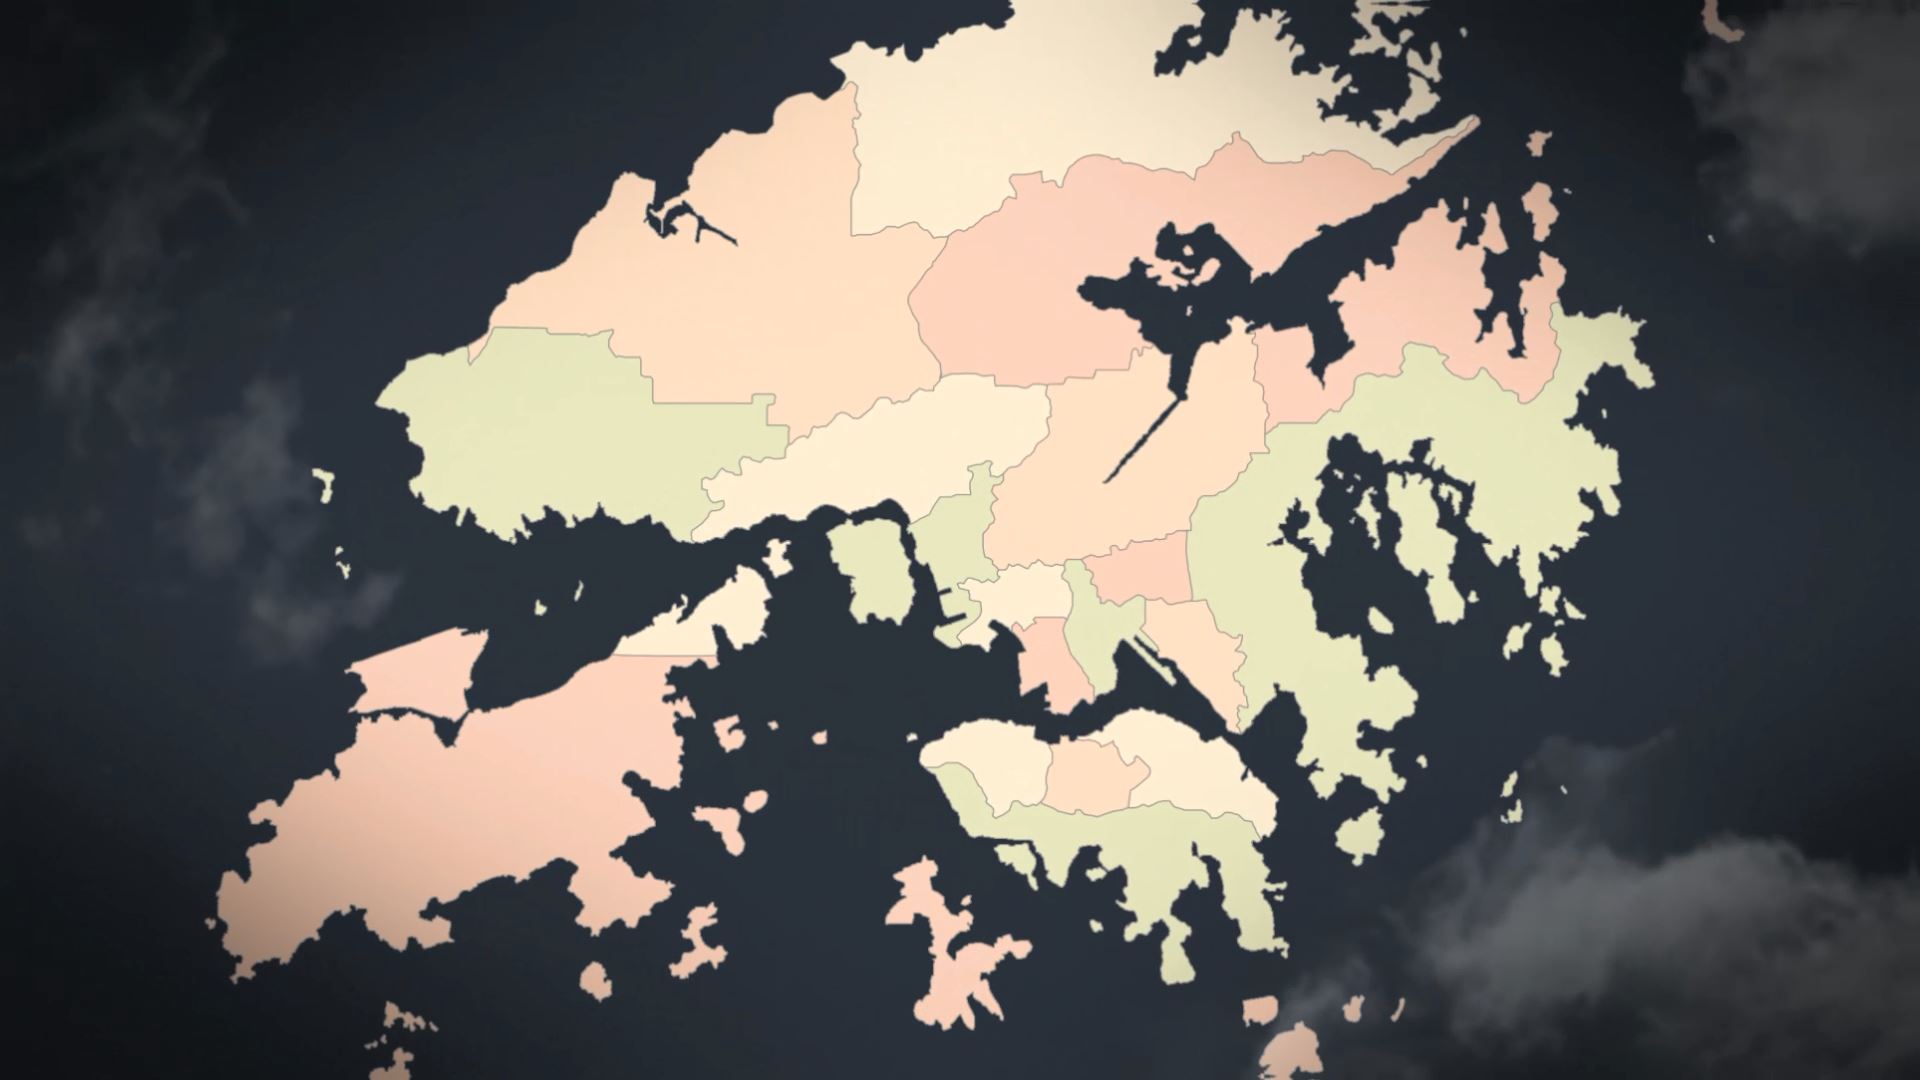  Hong Kong Animated Map - Hong Kong Region of the Peoples Republic of China 